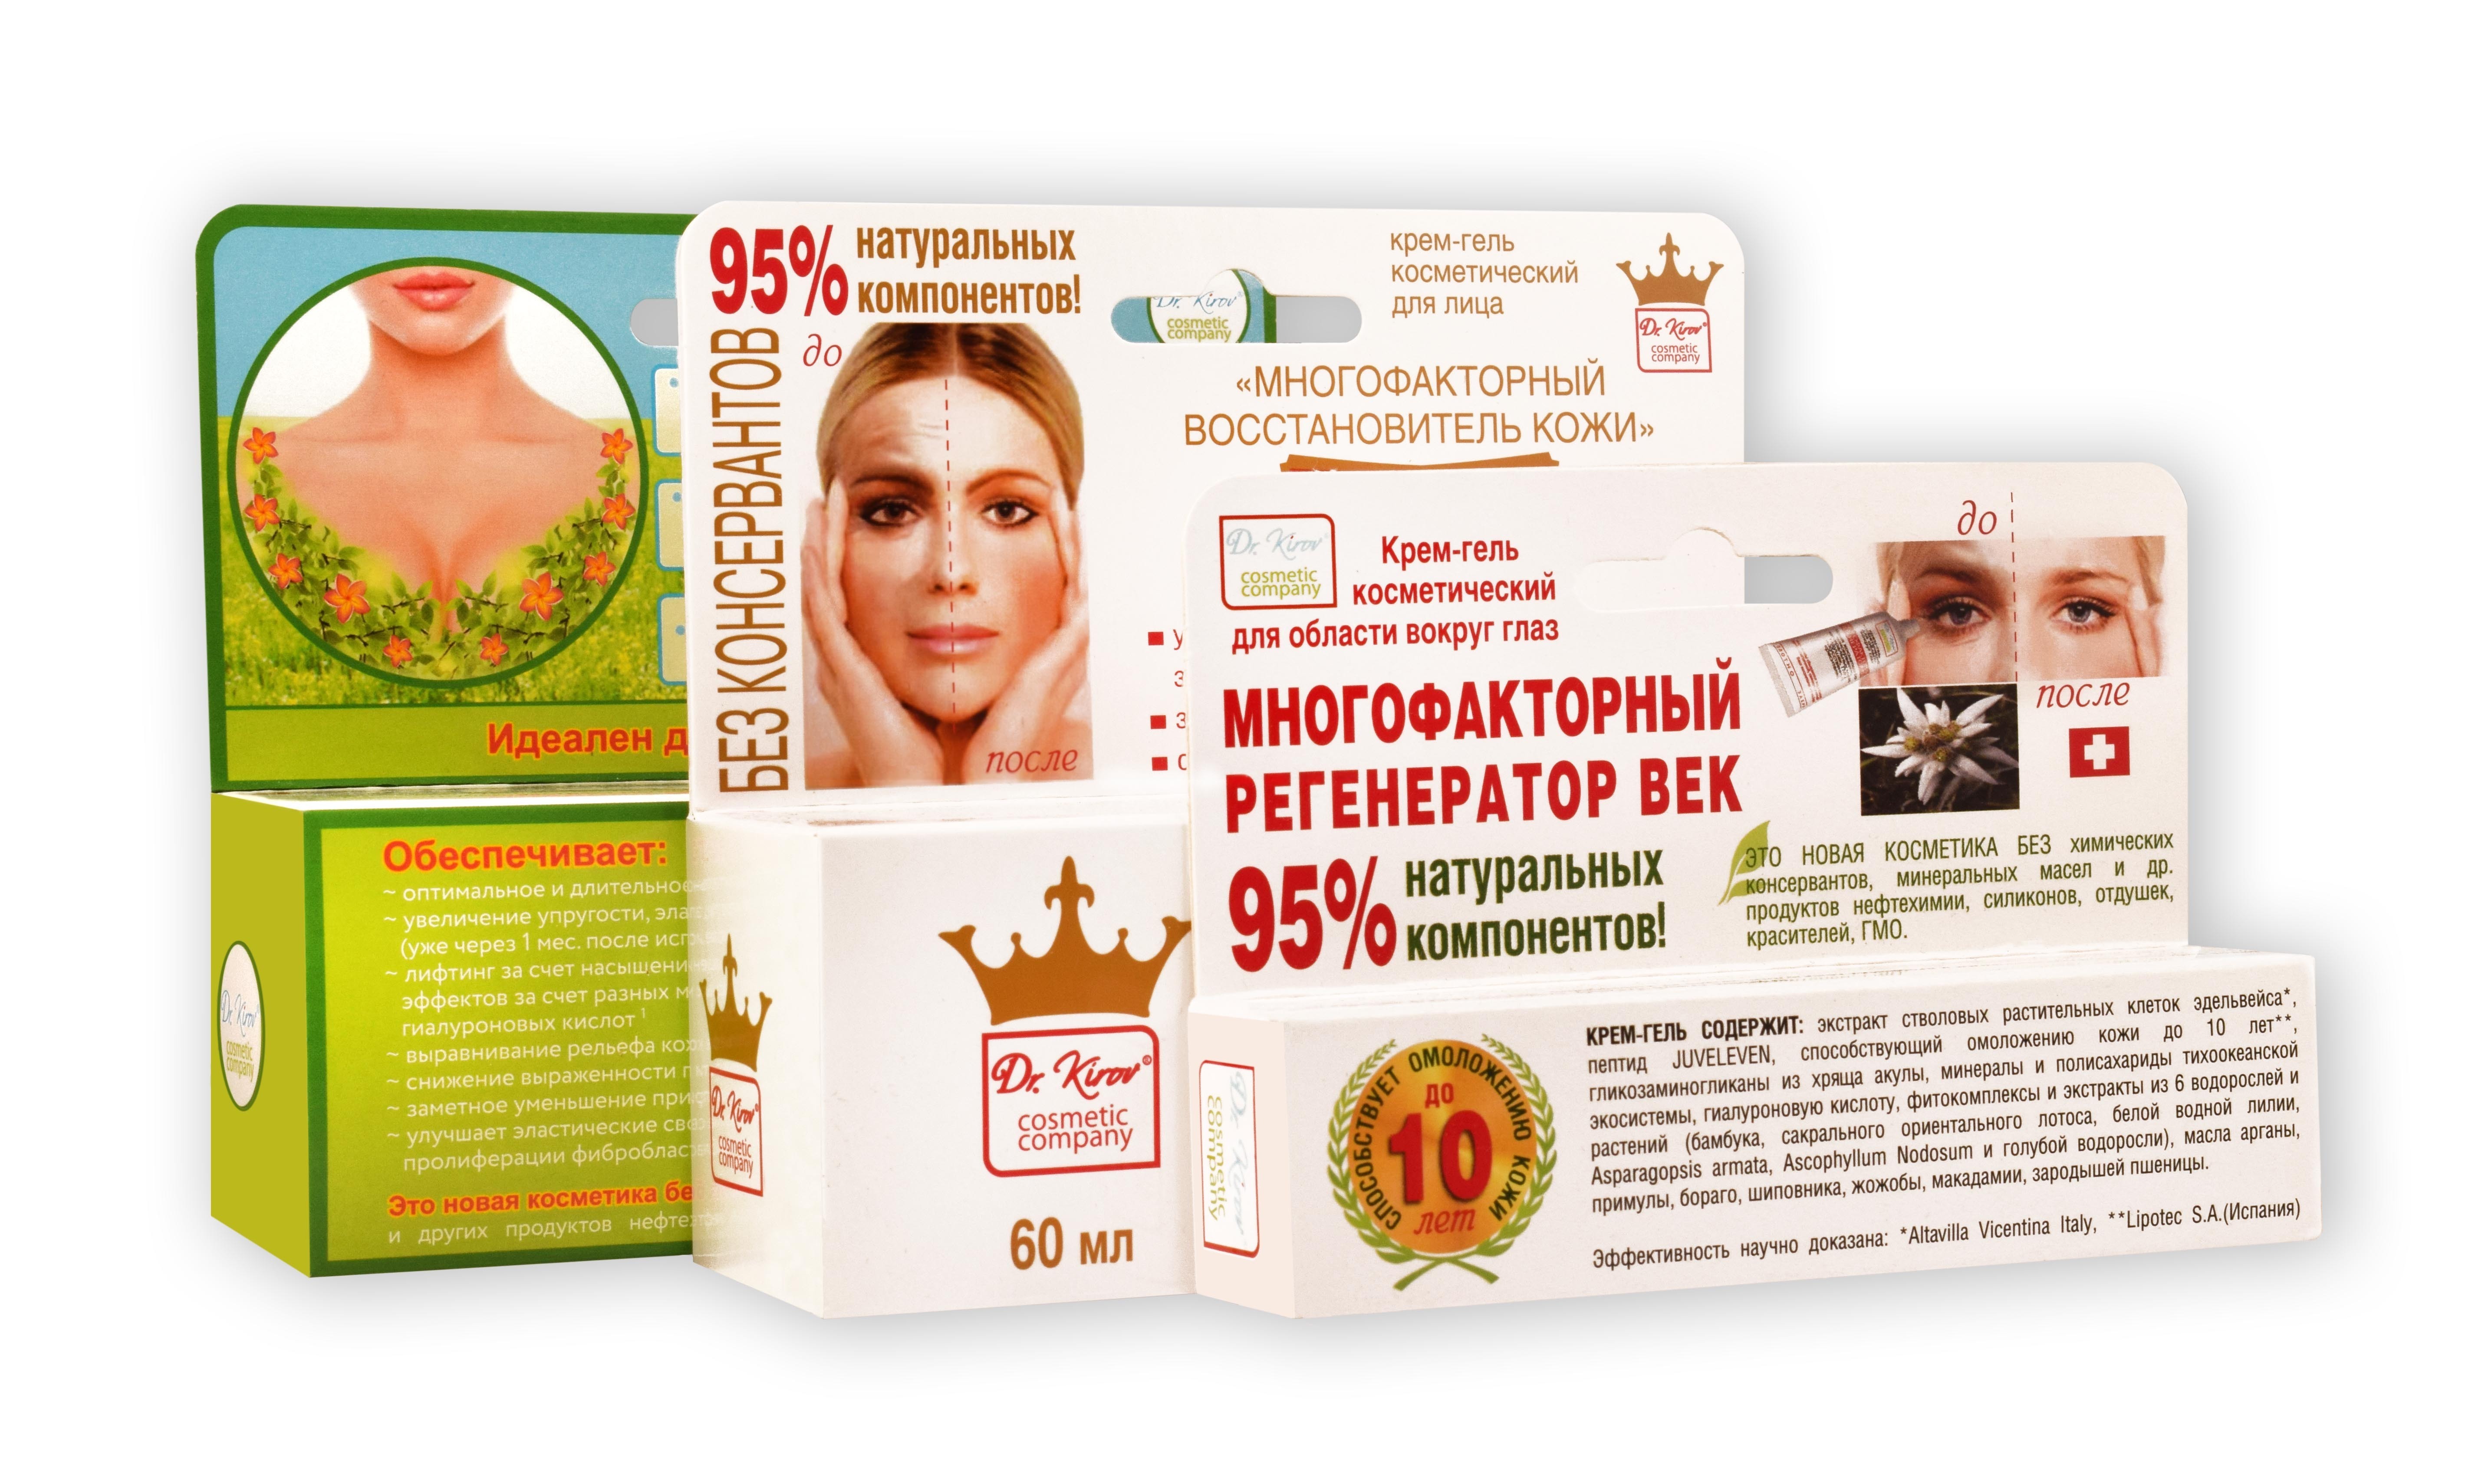 Купить крем киров. Гель для тела Dr. Kirov Cosmetic Company многофакторный восстановитель кожи рук и тела. Многофакторный восстановитель кожи отзывы.